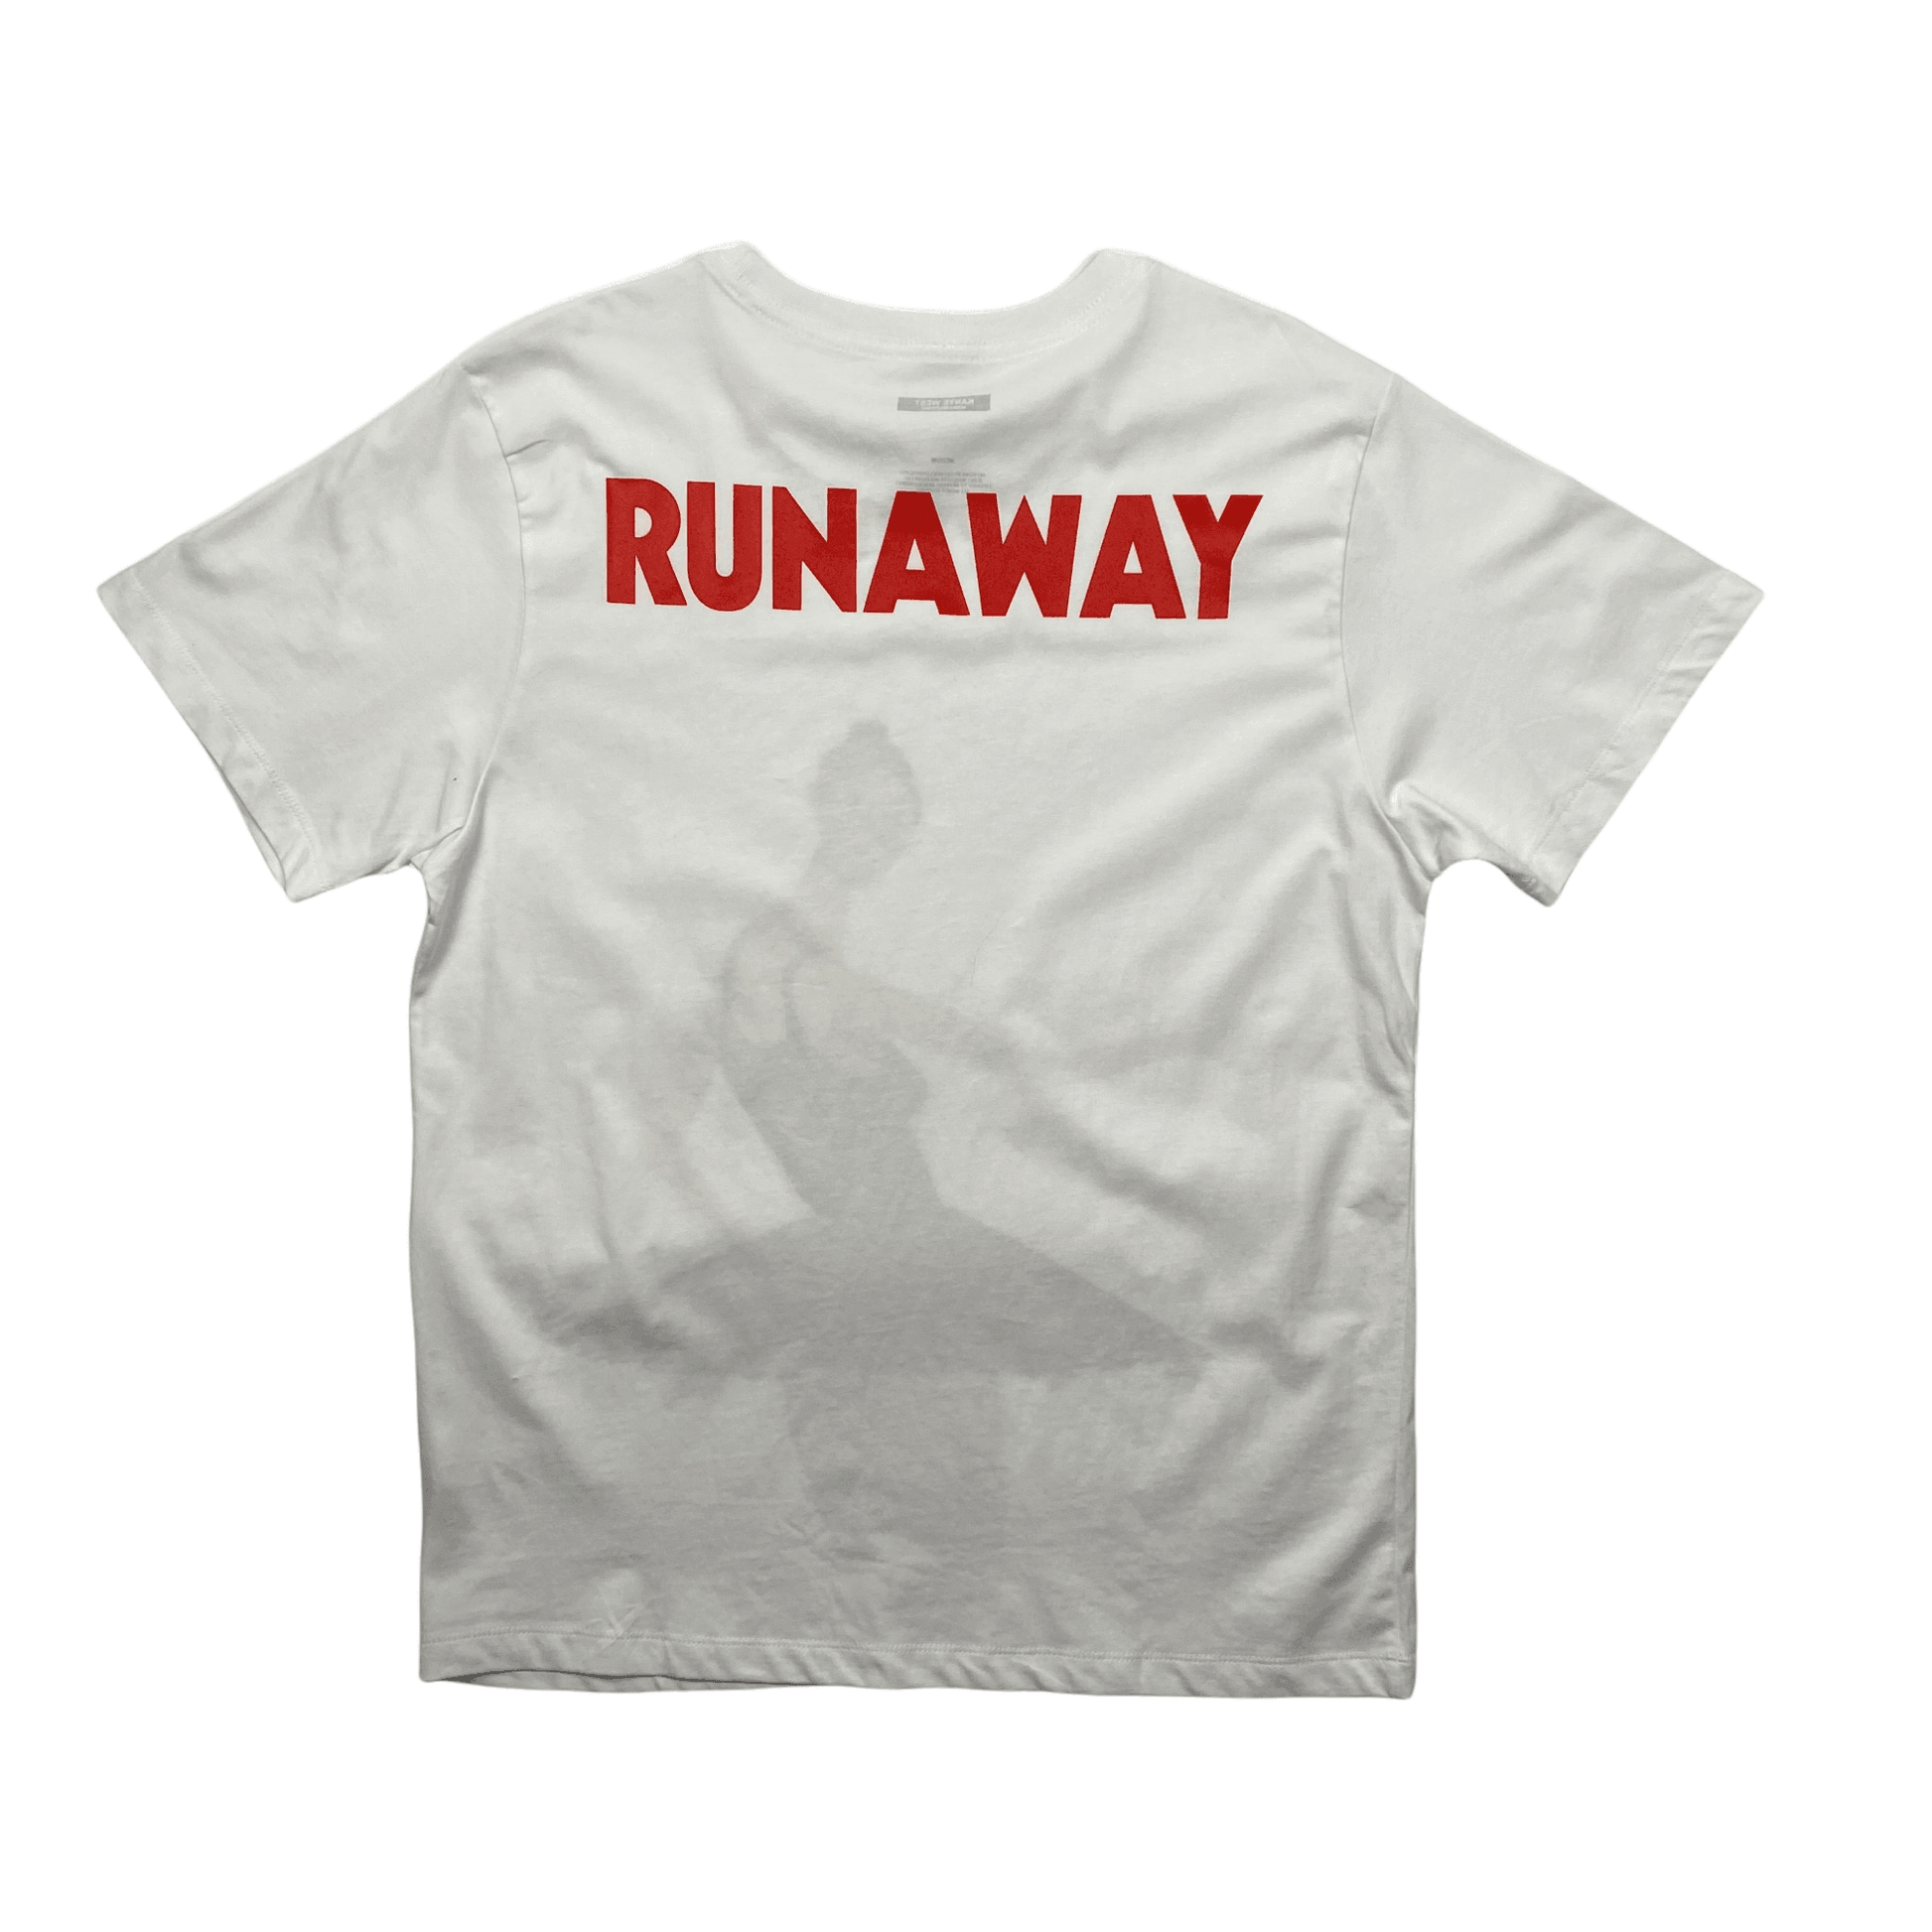 Vintage White Kayne West "Runaway" Tee - Medium - The Streetwear Studio